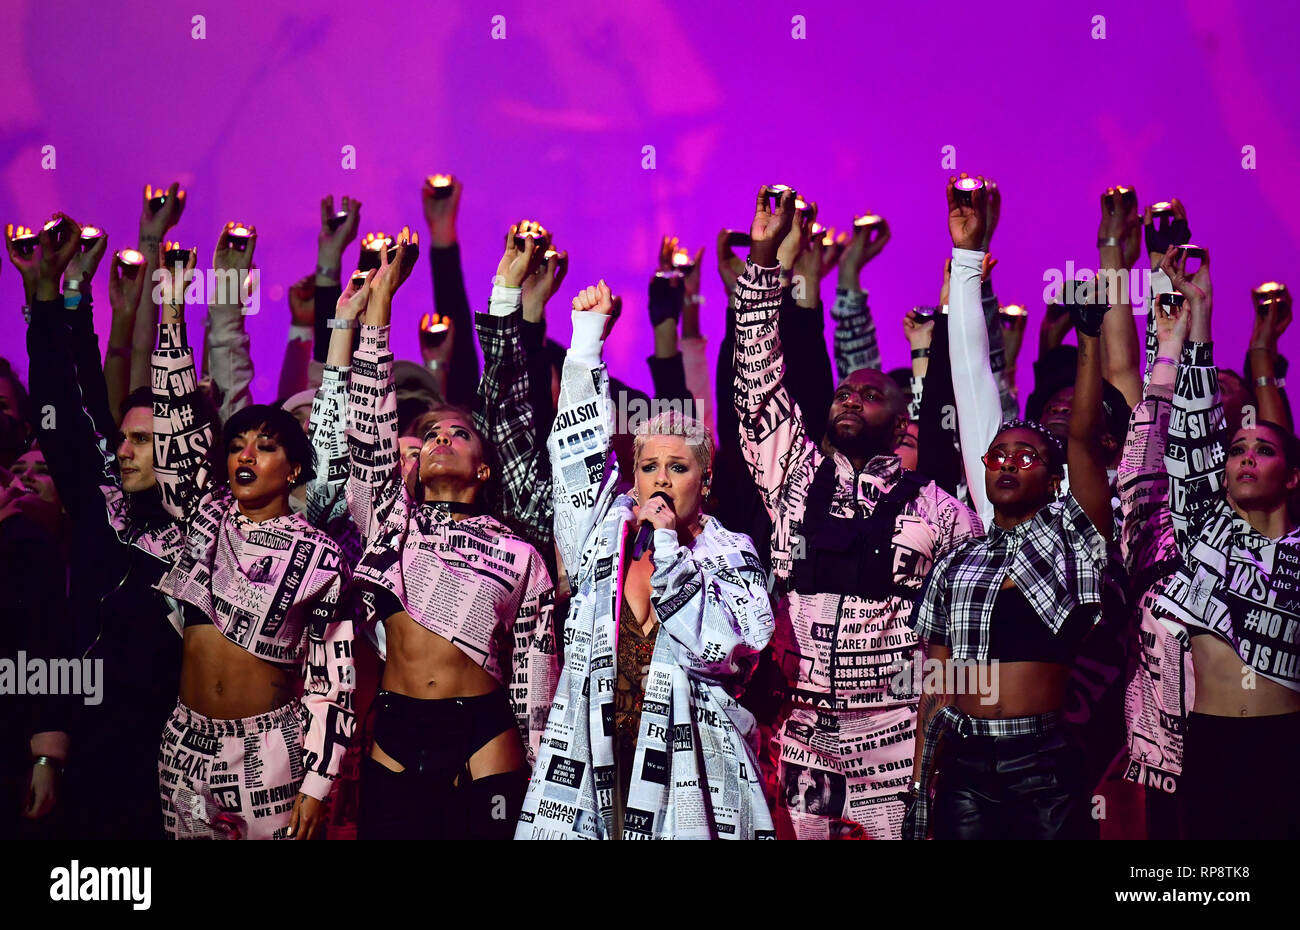 Pink se produit sur scène aux Brit Awards 2019 à l'O2 Arena de Londres.  APPUYEZ SUR ASSOCIATION PHOTO. Date de la photo: Mercredi 20 février 2019.  Voir l'histoire de PA SHOWBIZ Bits.